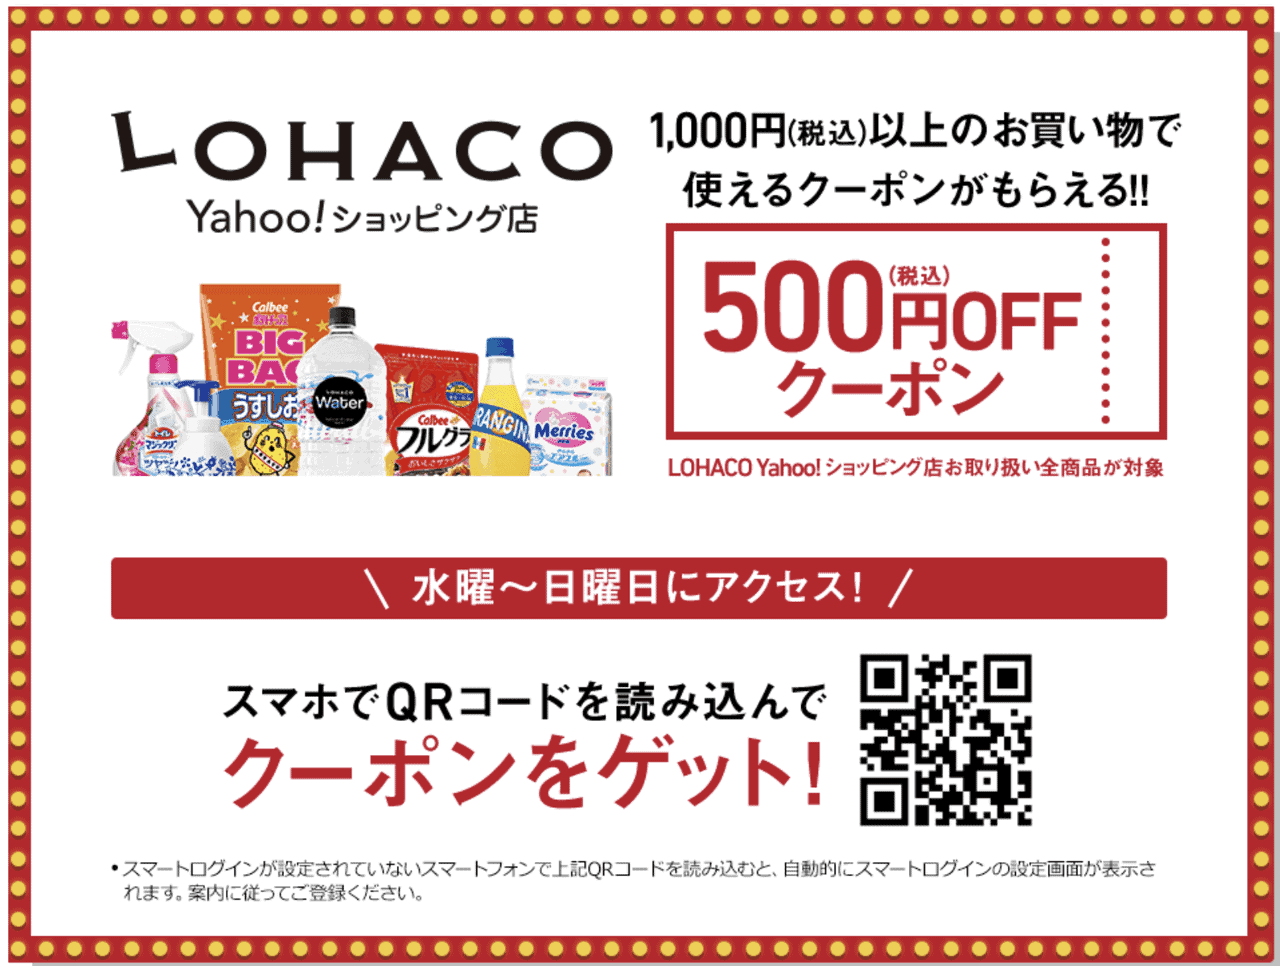 2019年7月のサイバーサンデーの特典 Yahoo!ショッピングロハコ 500円オフクーポン